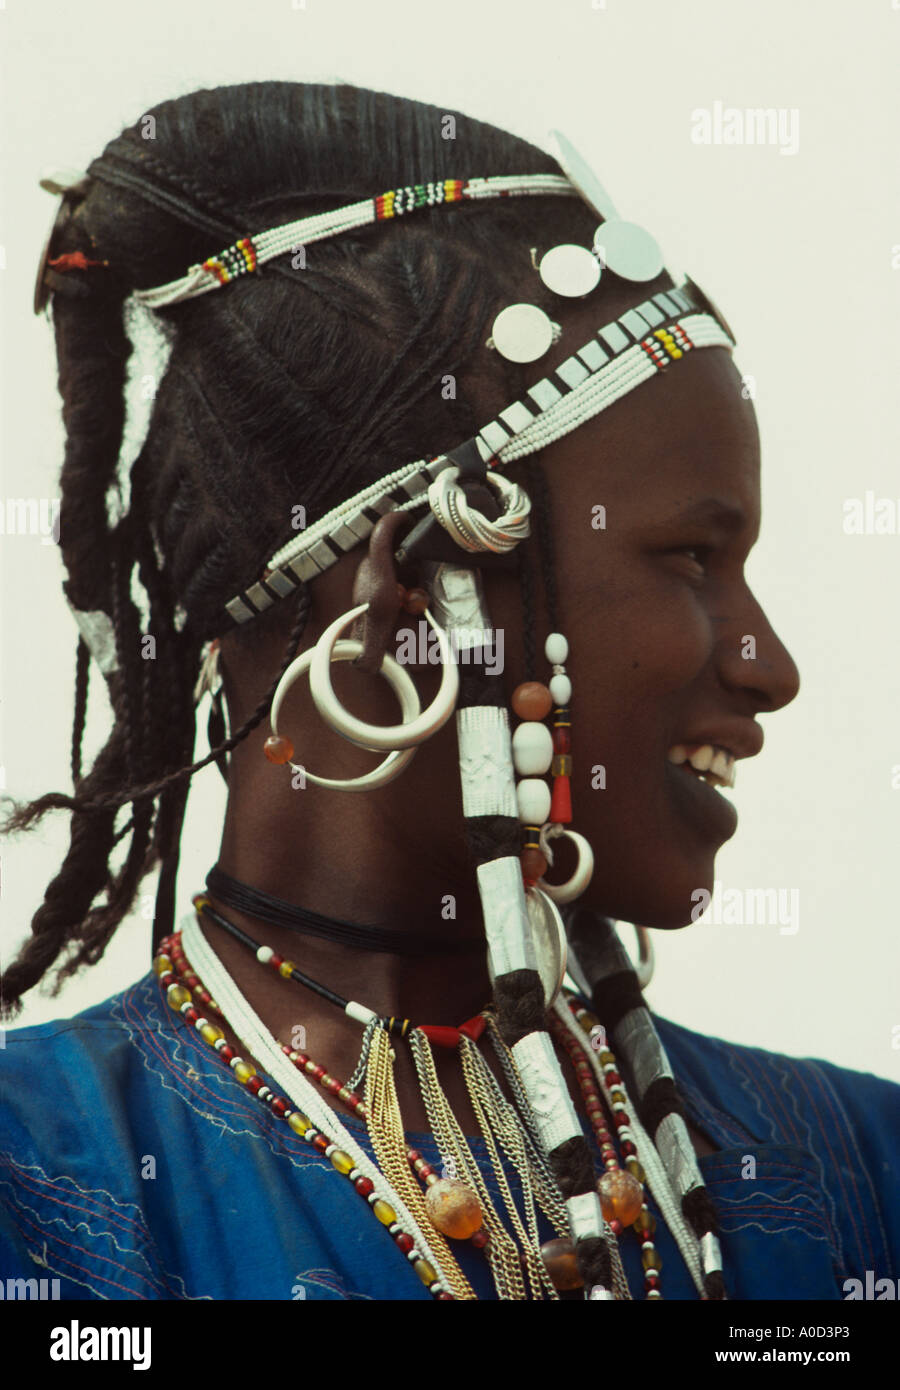 Dans un style de cheveux silver crest Maria Theresa dollars et perles de verre ornent une femme Peul du Burkina Faso Banque D'Images